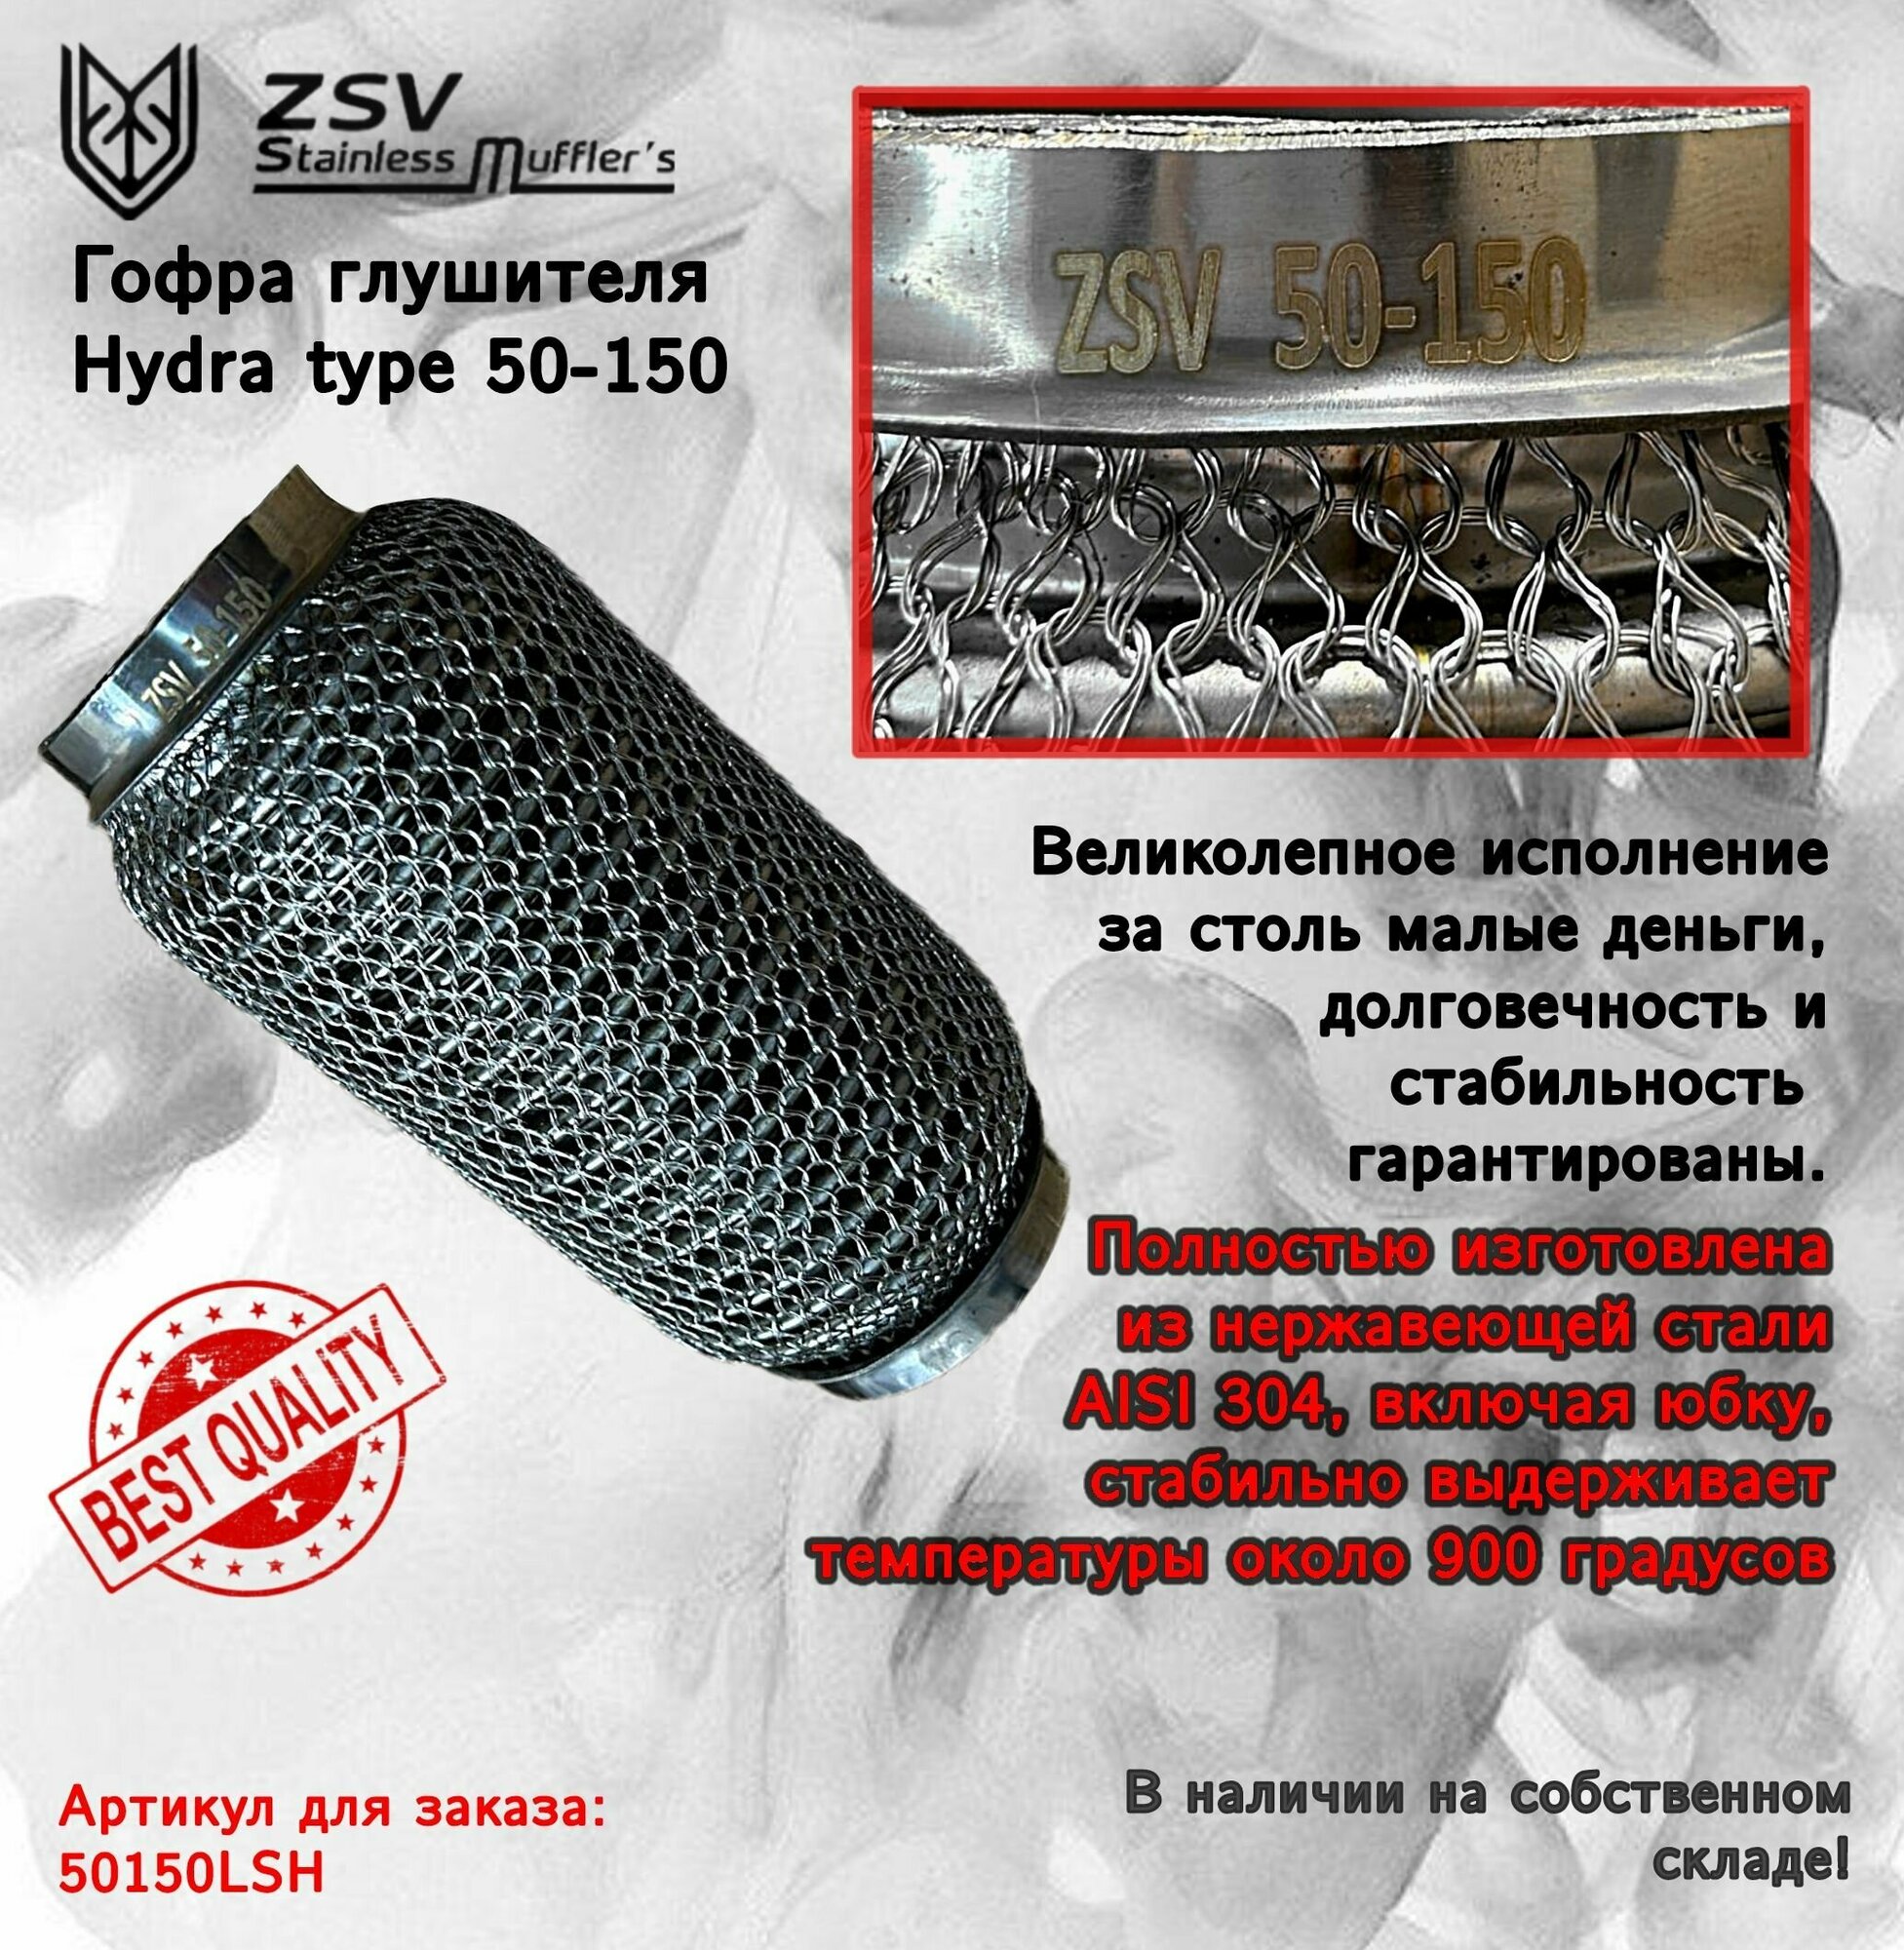 Гофра глушителя Hydra type 50-150 Улучшенная! полностью изготовлена из нержавеющей стали AISI 304